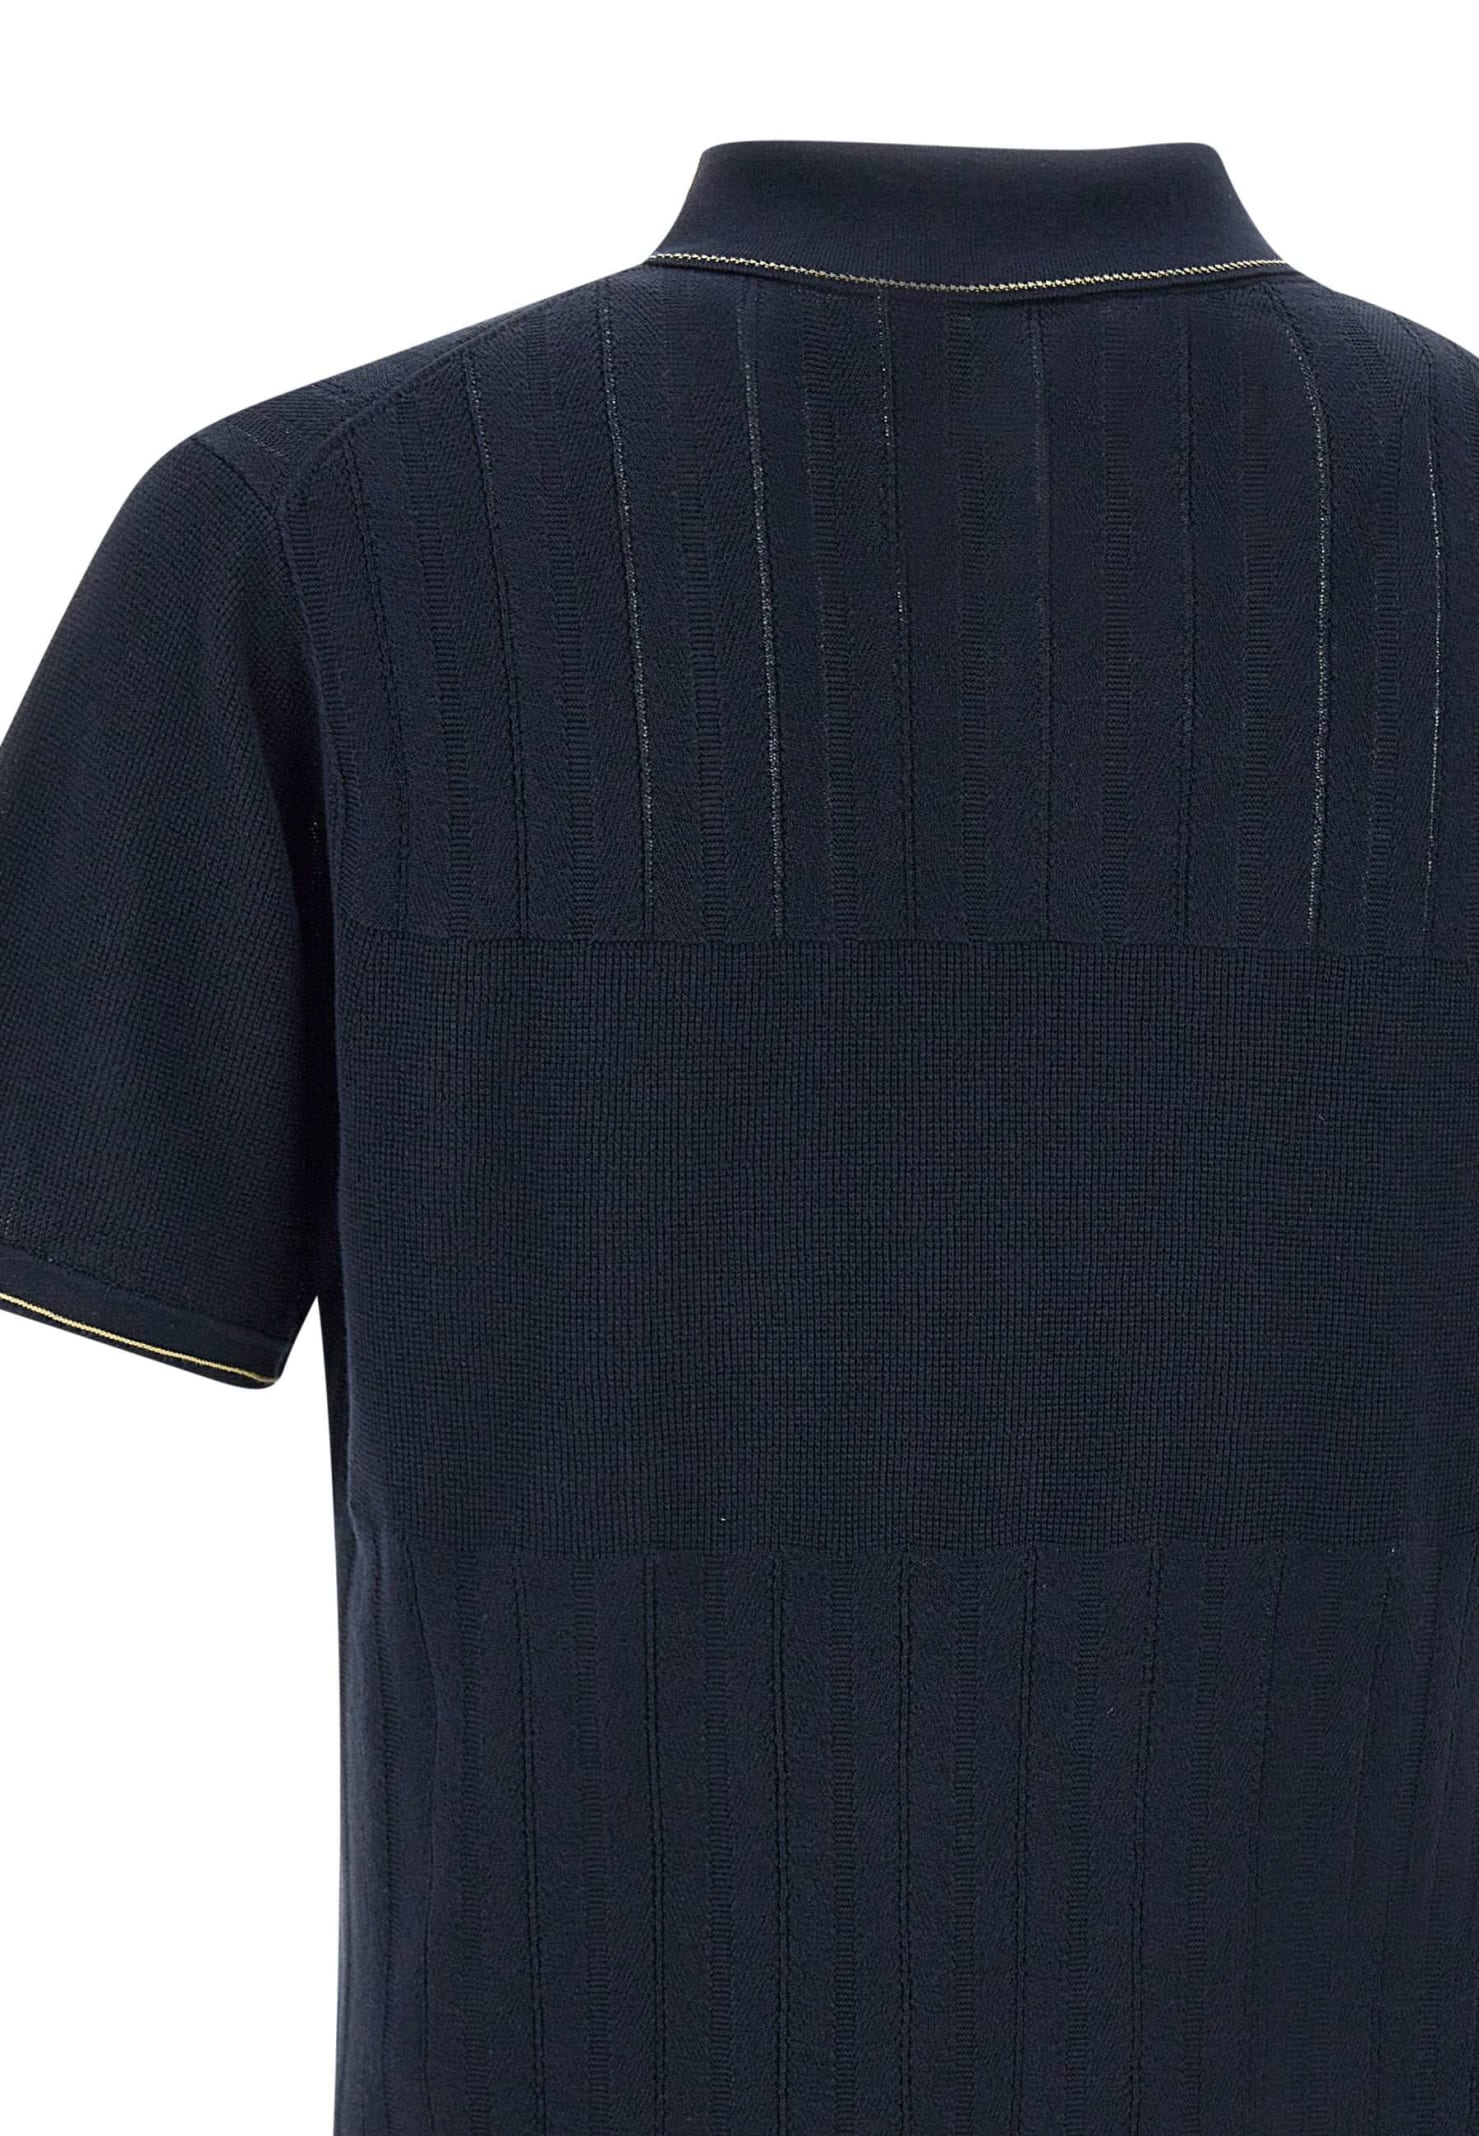 Shop Paul Smith Organic Cotton Polo Shirt In Navy